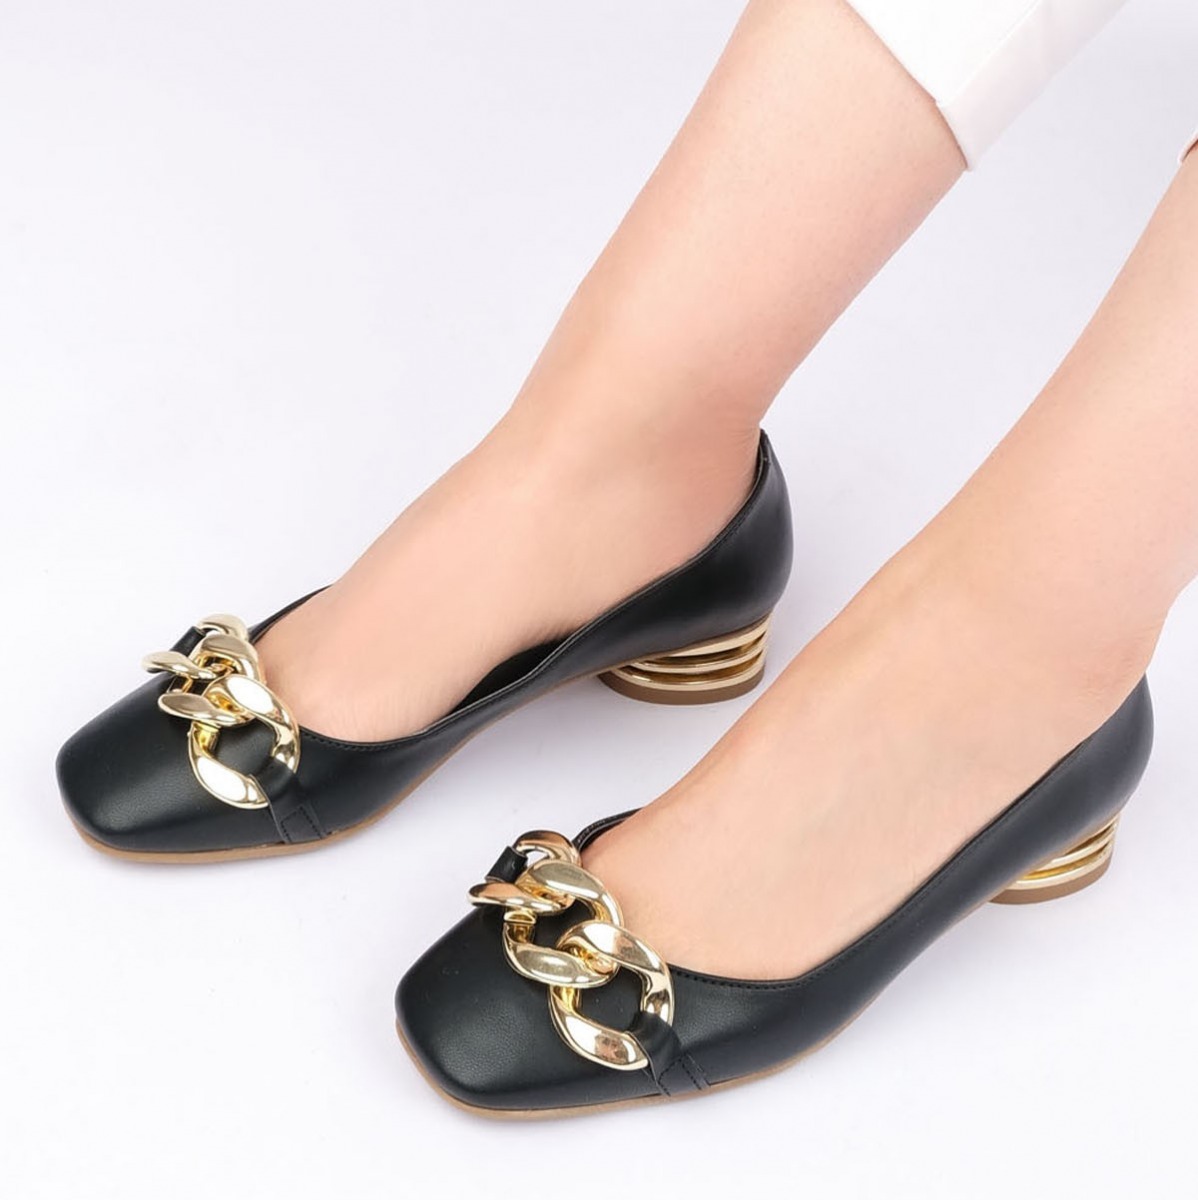 Flo Kadın Günlük Klasik Topuklu Ayakkabı Giva Siyah. 3